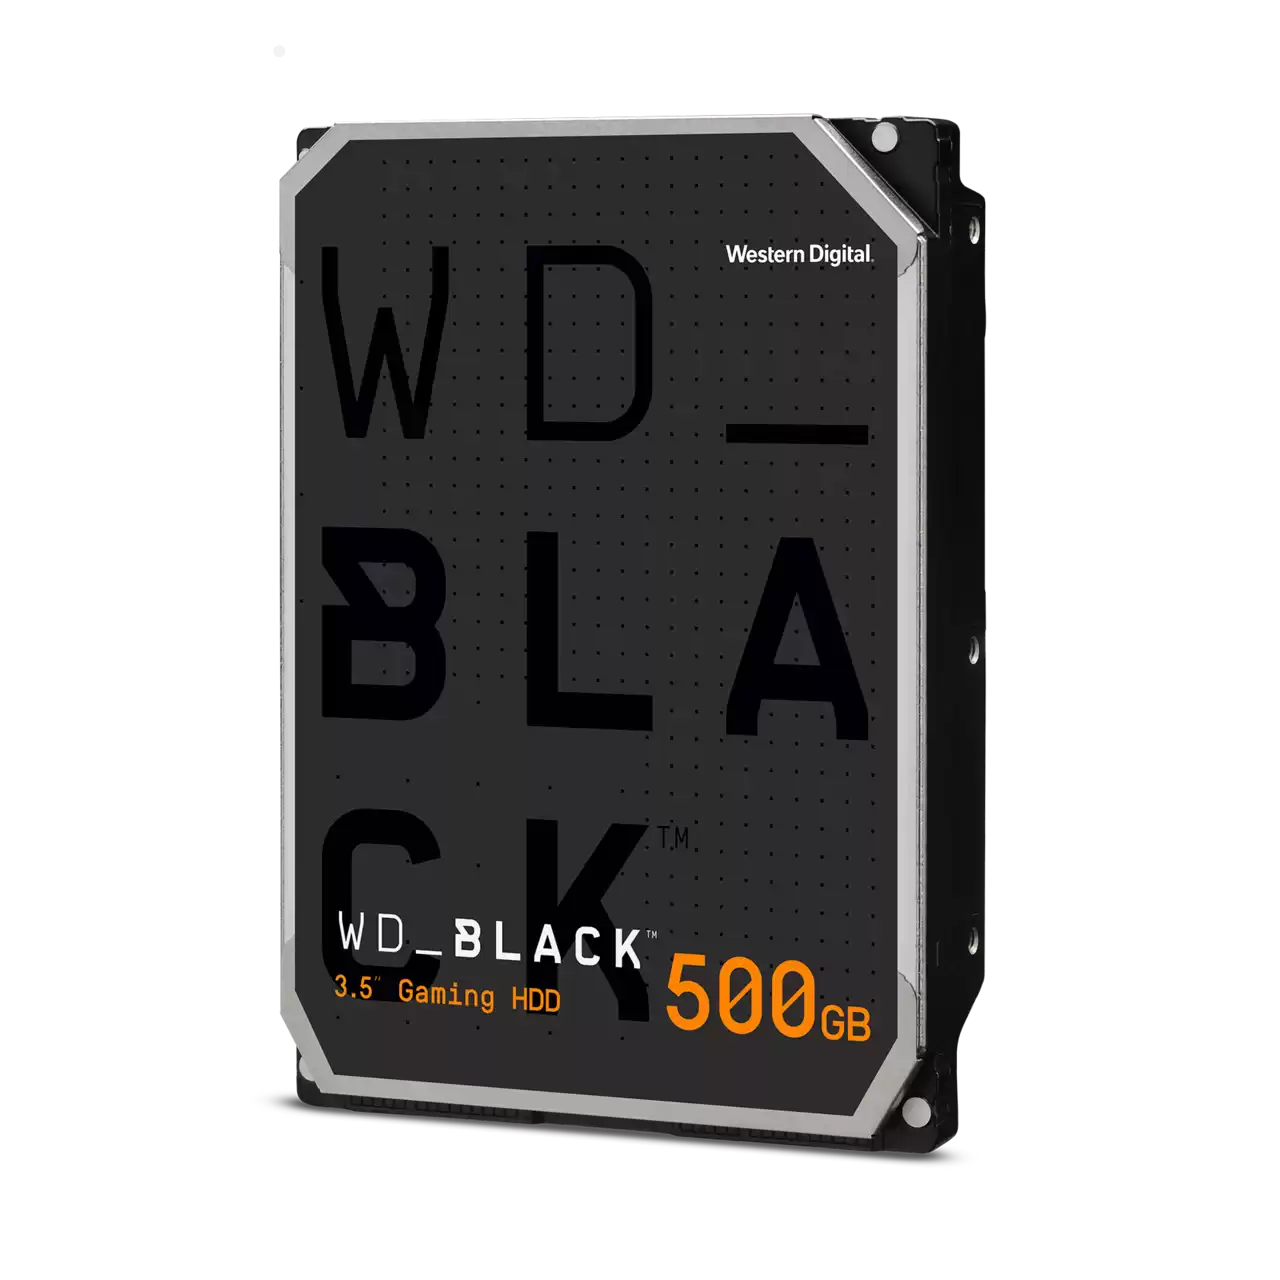 WD_BLACK 3.5-Inch Gaming Hard Drive - 8TB - 3.5 SATA - WD8002FZWX